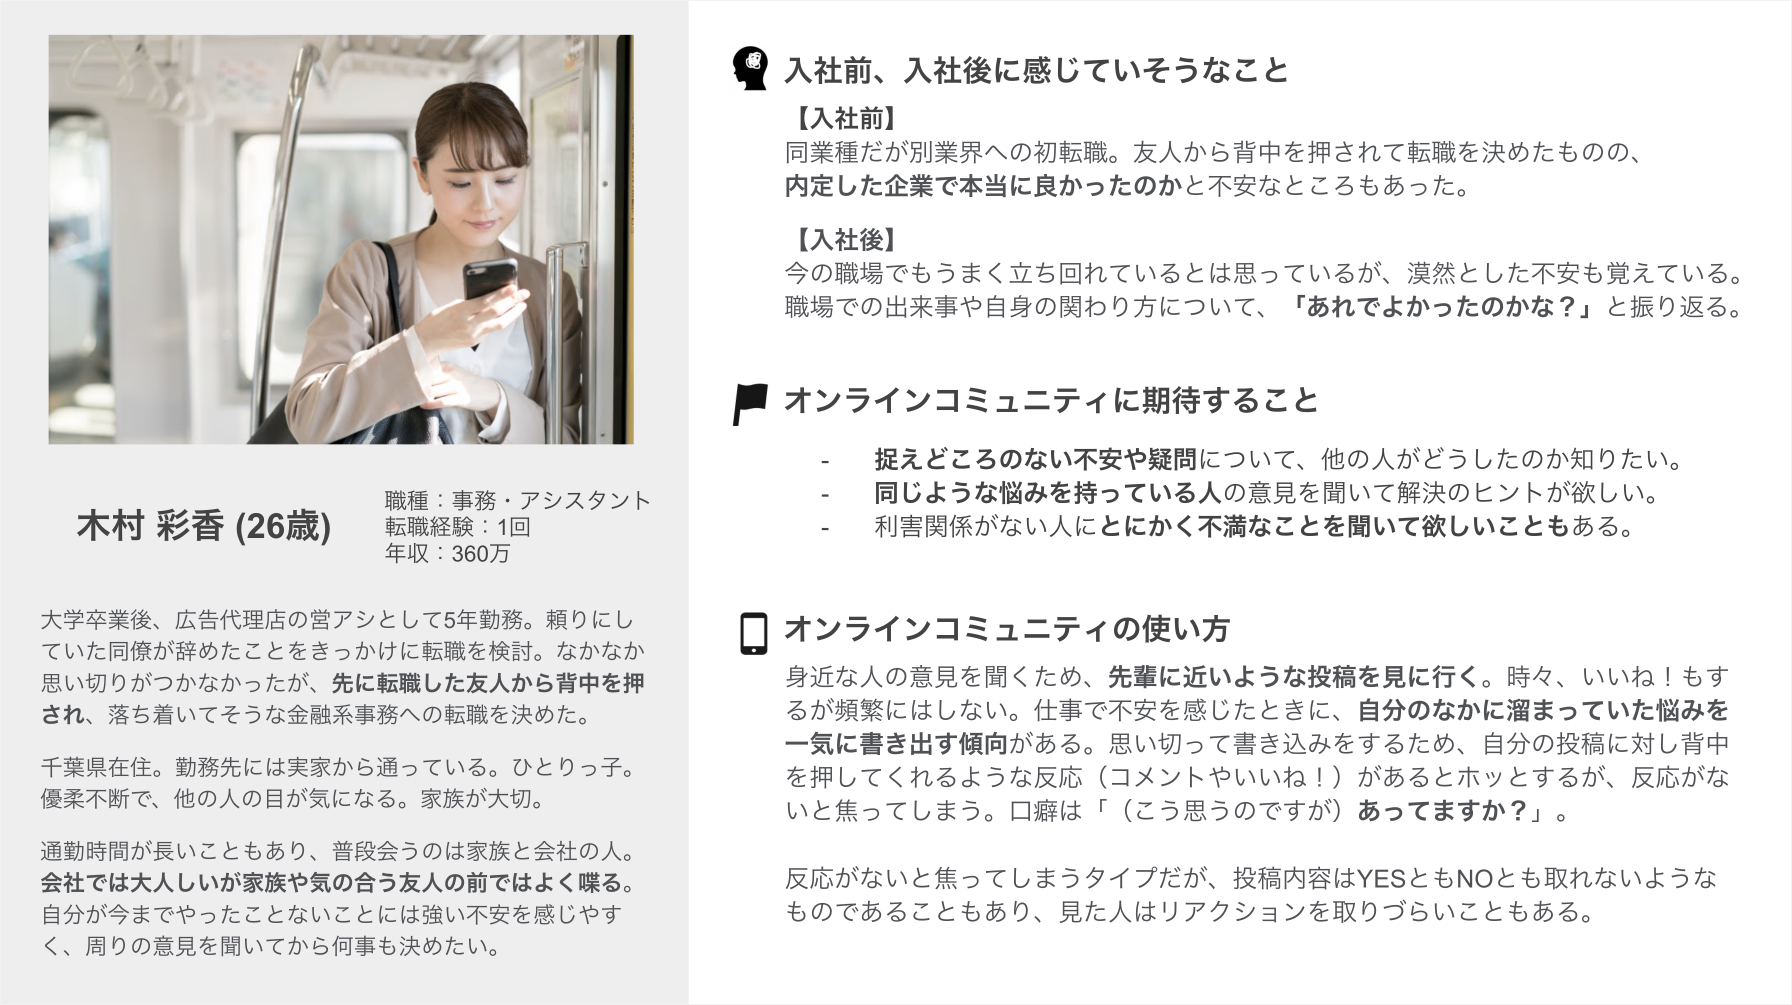 ペルソナである木村彩香さんのプロフィール。入社前、入社後に感じていそうなこと、オンラインコミュニティに期待すること、オンラインコミュニティの使い方などが書かれている。